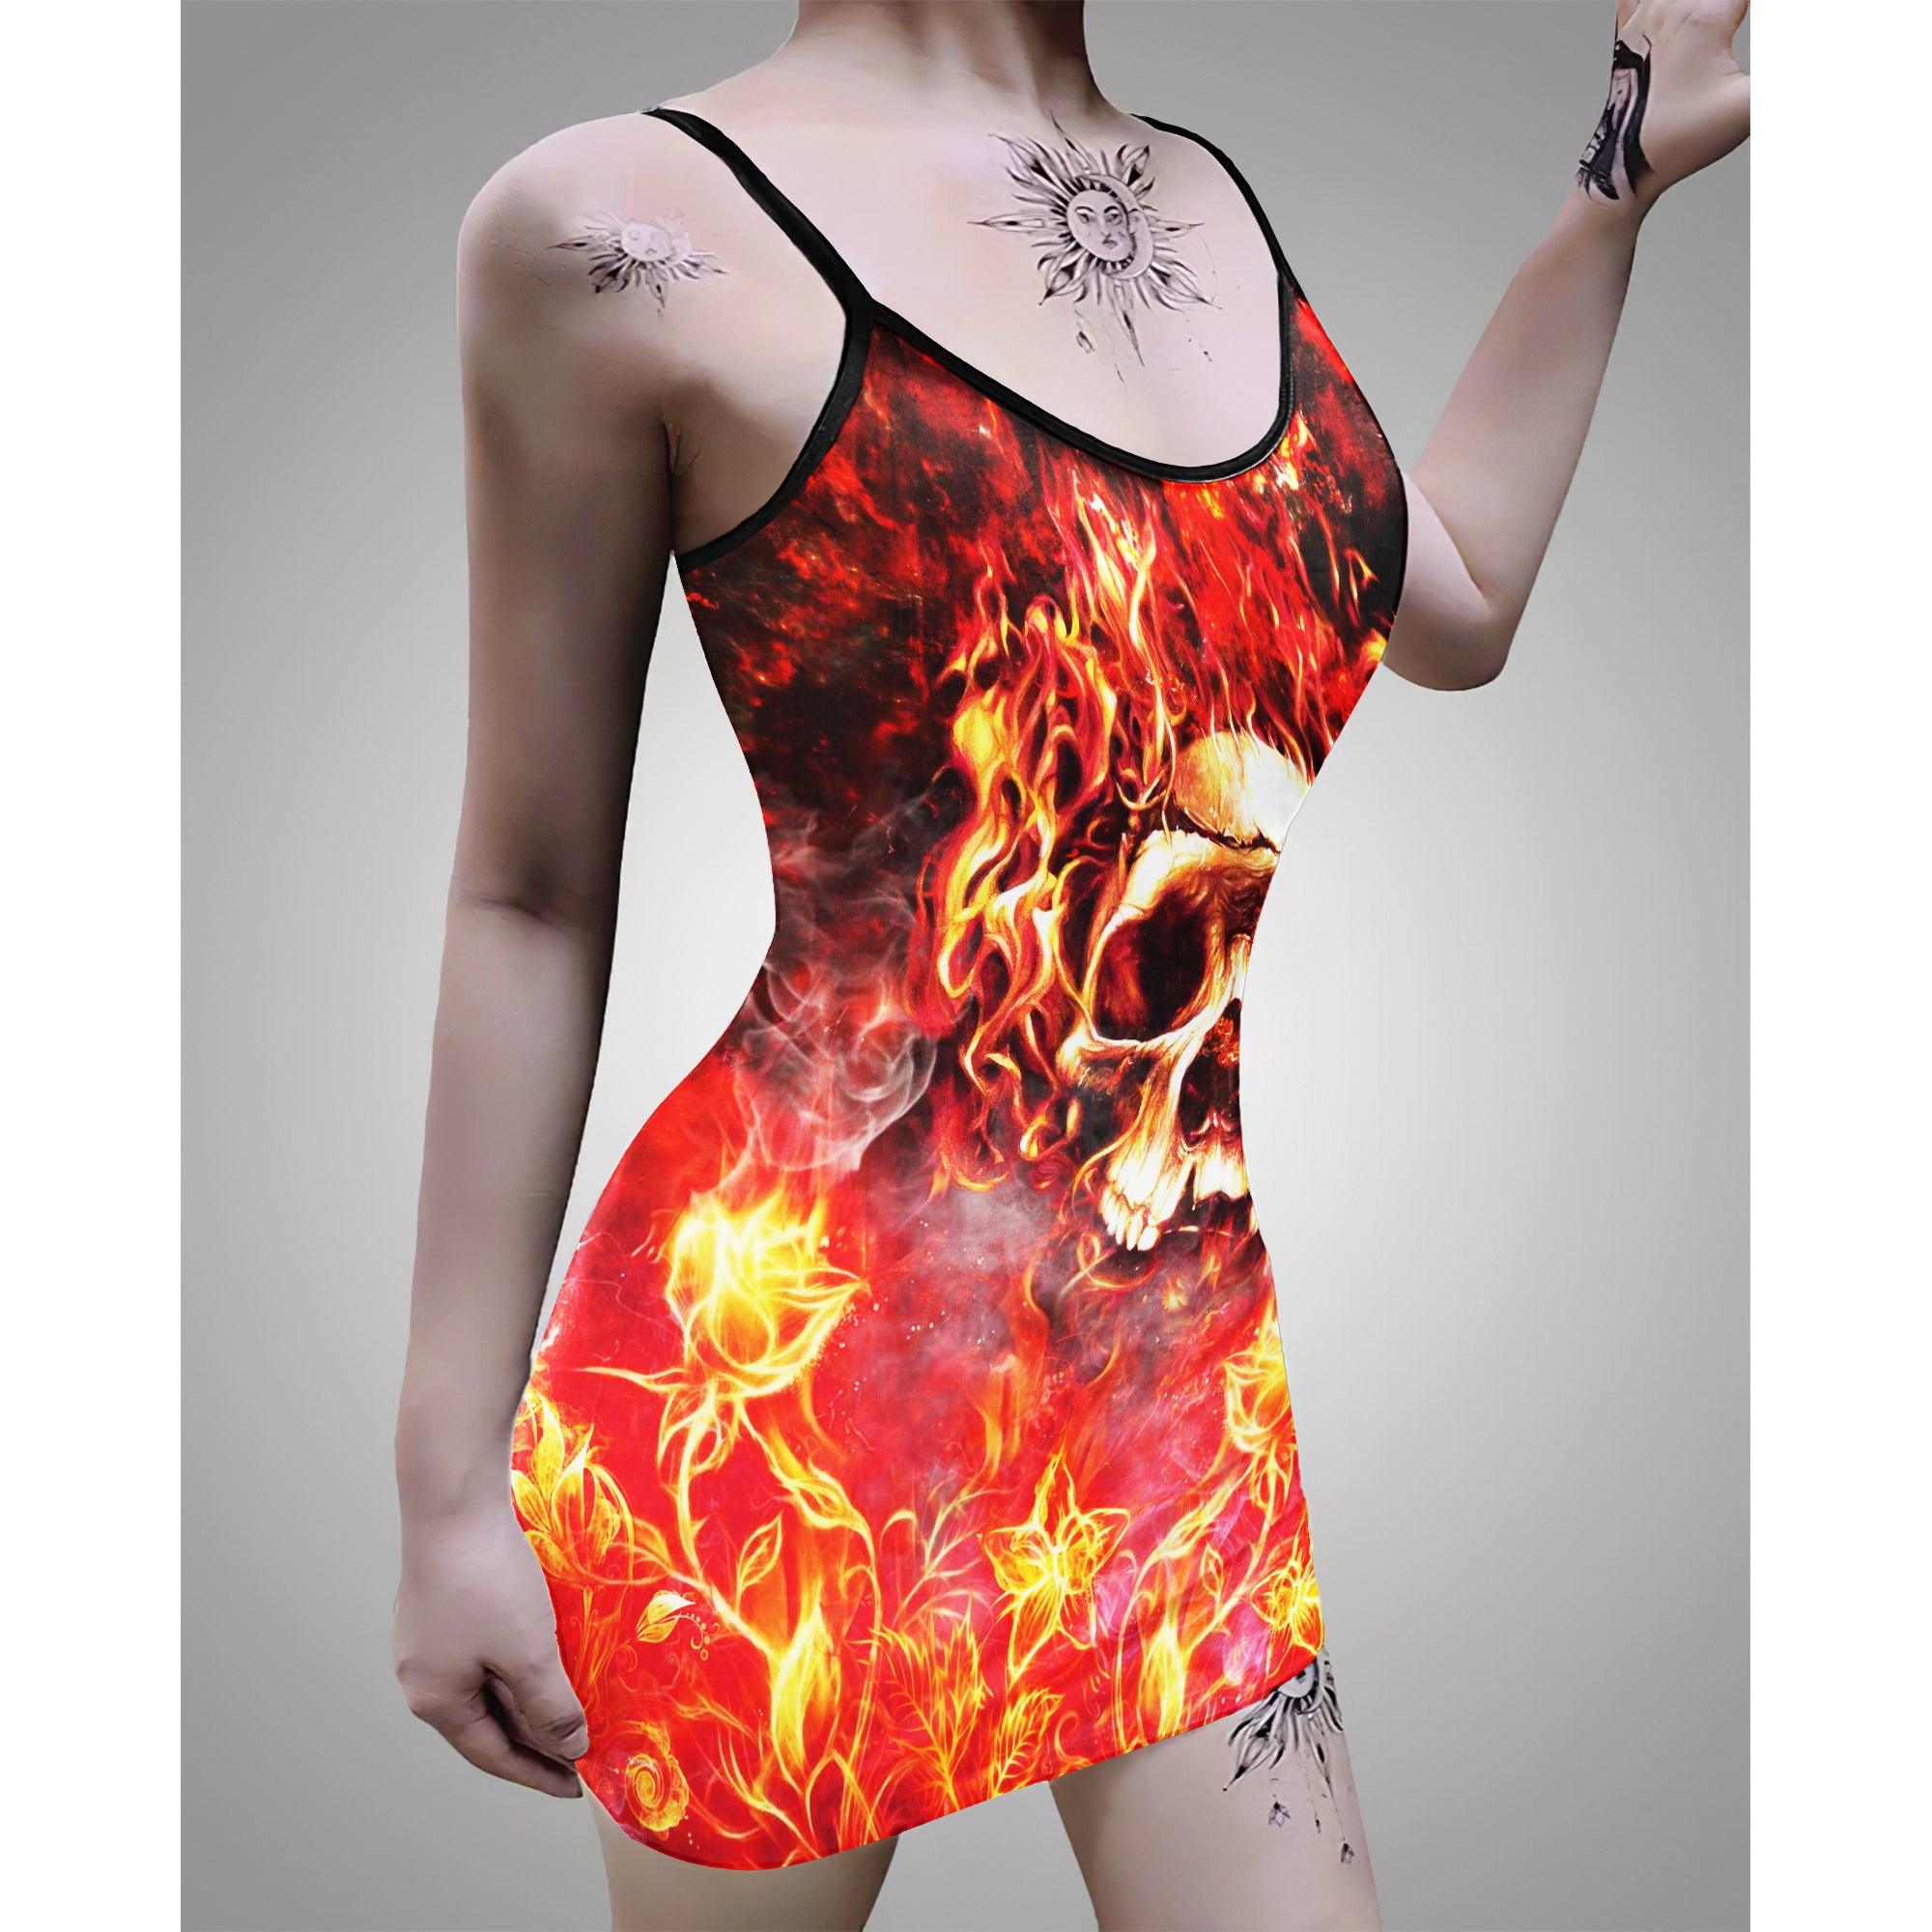 Flame Skull Print Dress For Women-Wonder Skull